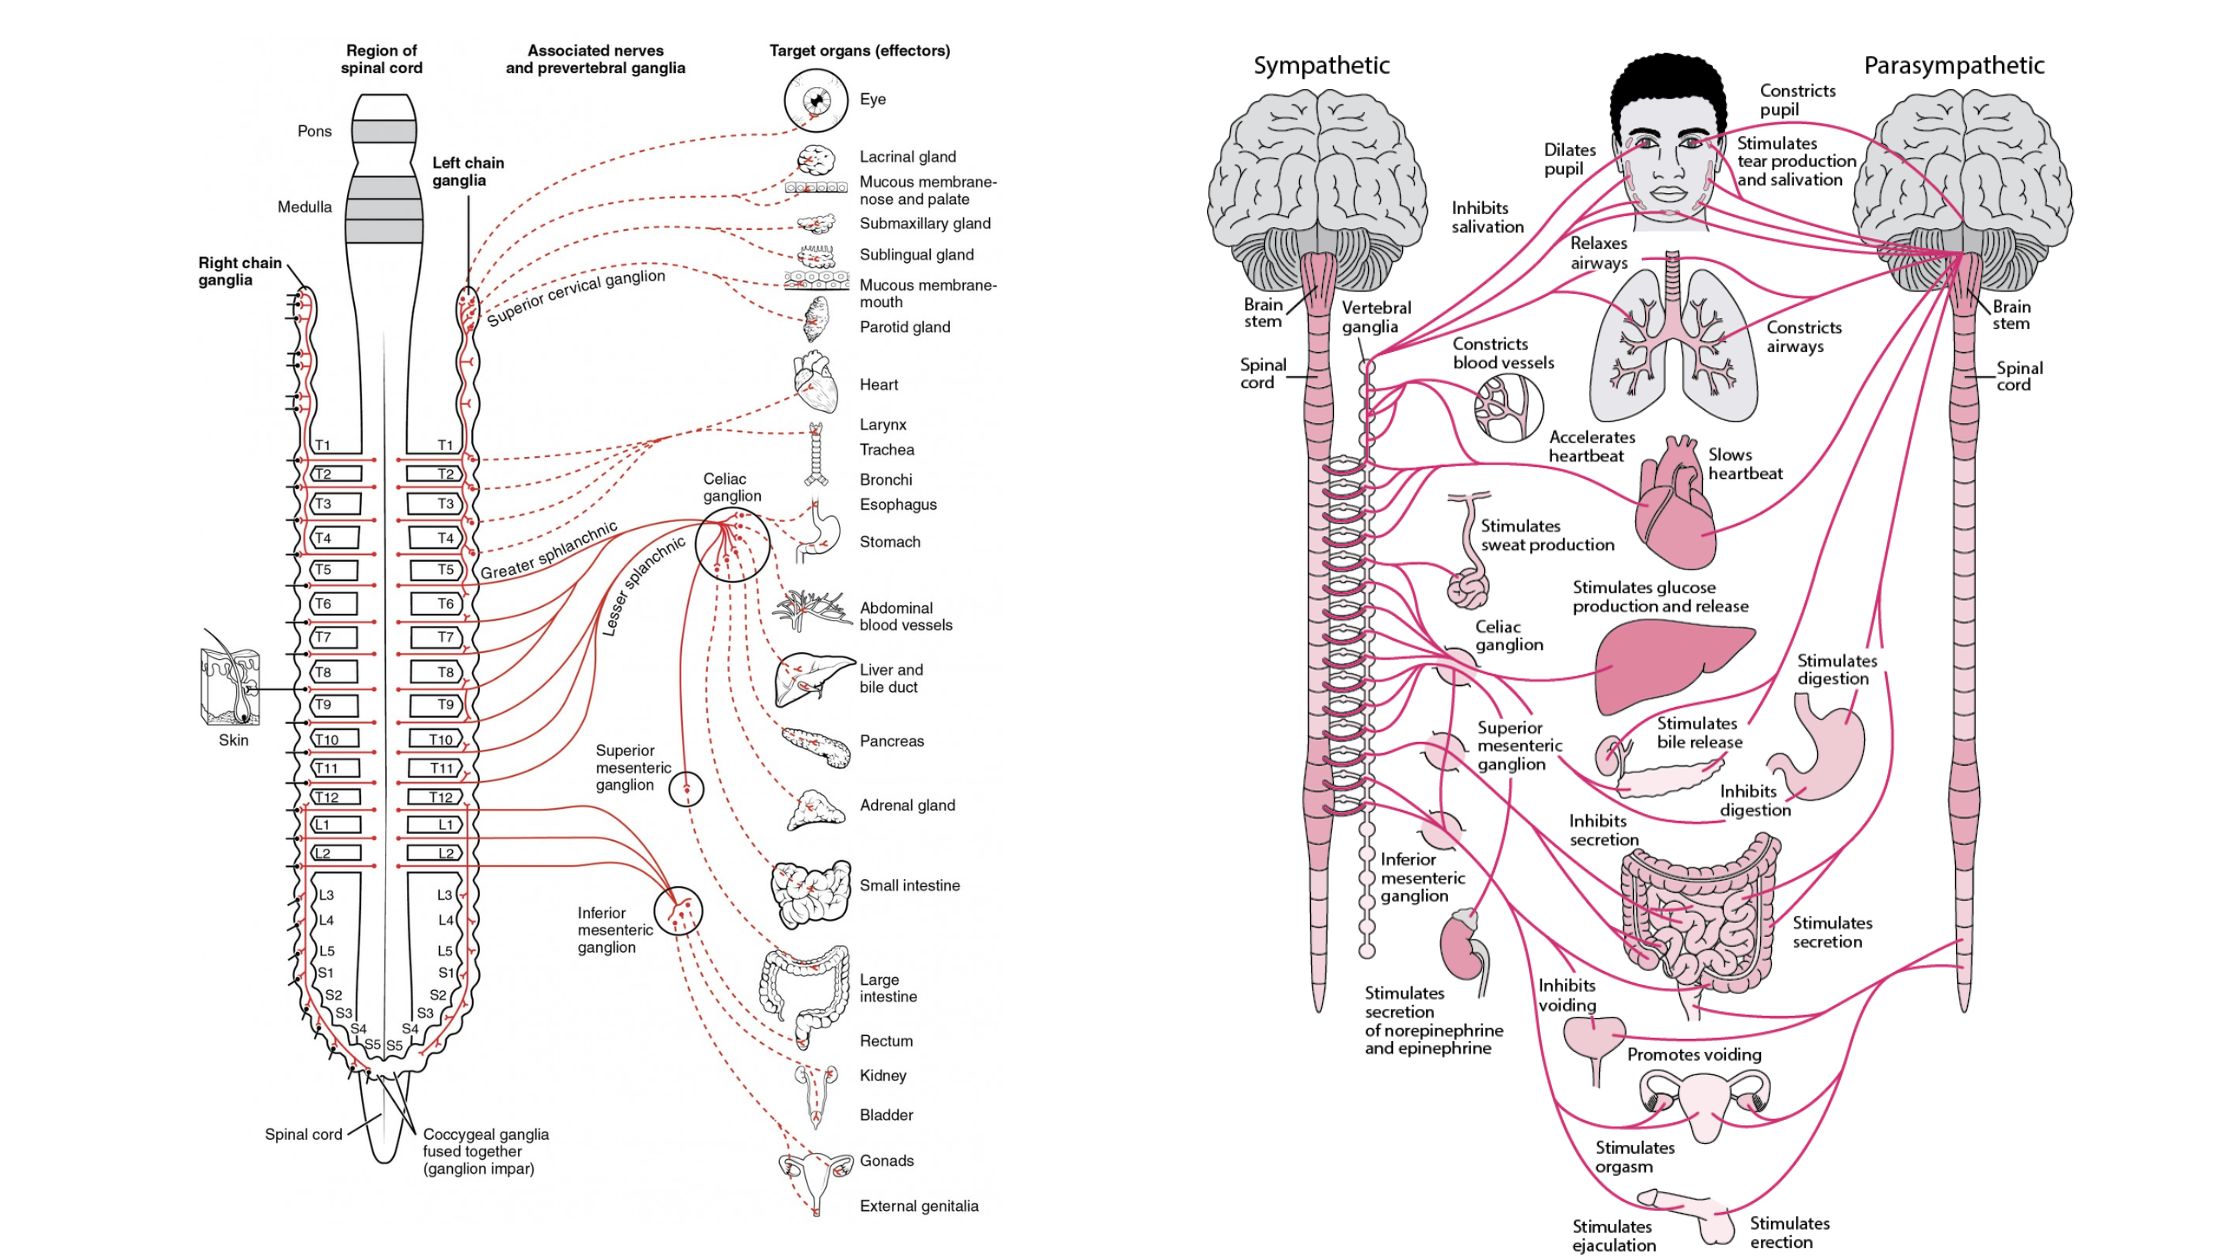 Autonomic nervous system - Definition, Structure, Functions